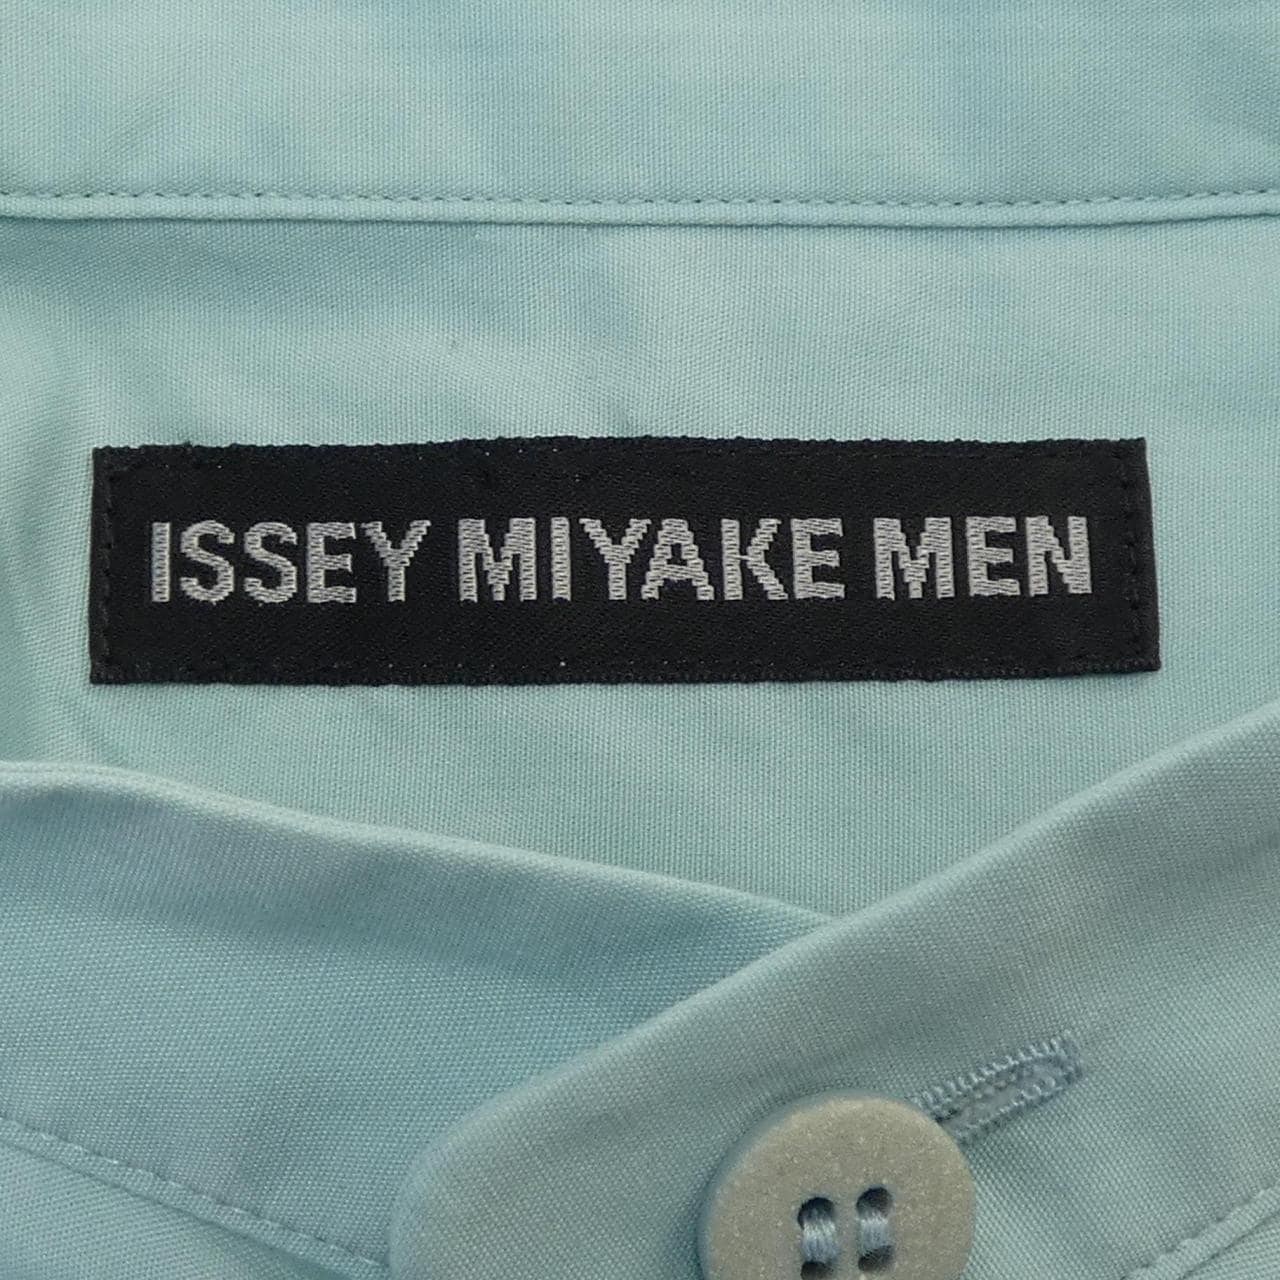 イッセイミヤケメン ISSEY MIYAKE MEN シャツ